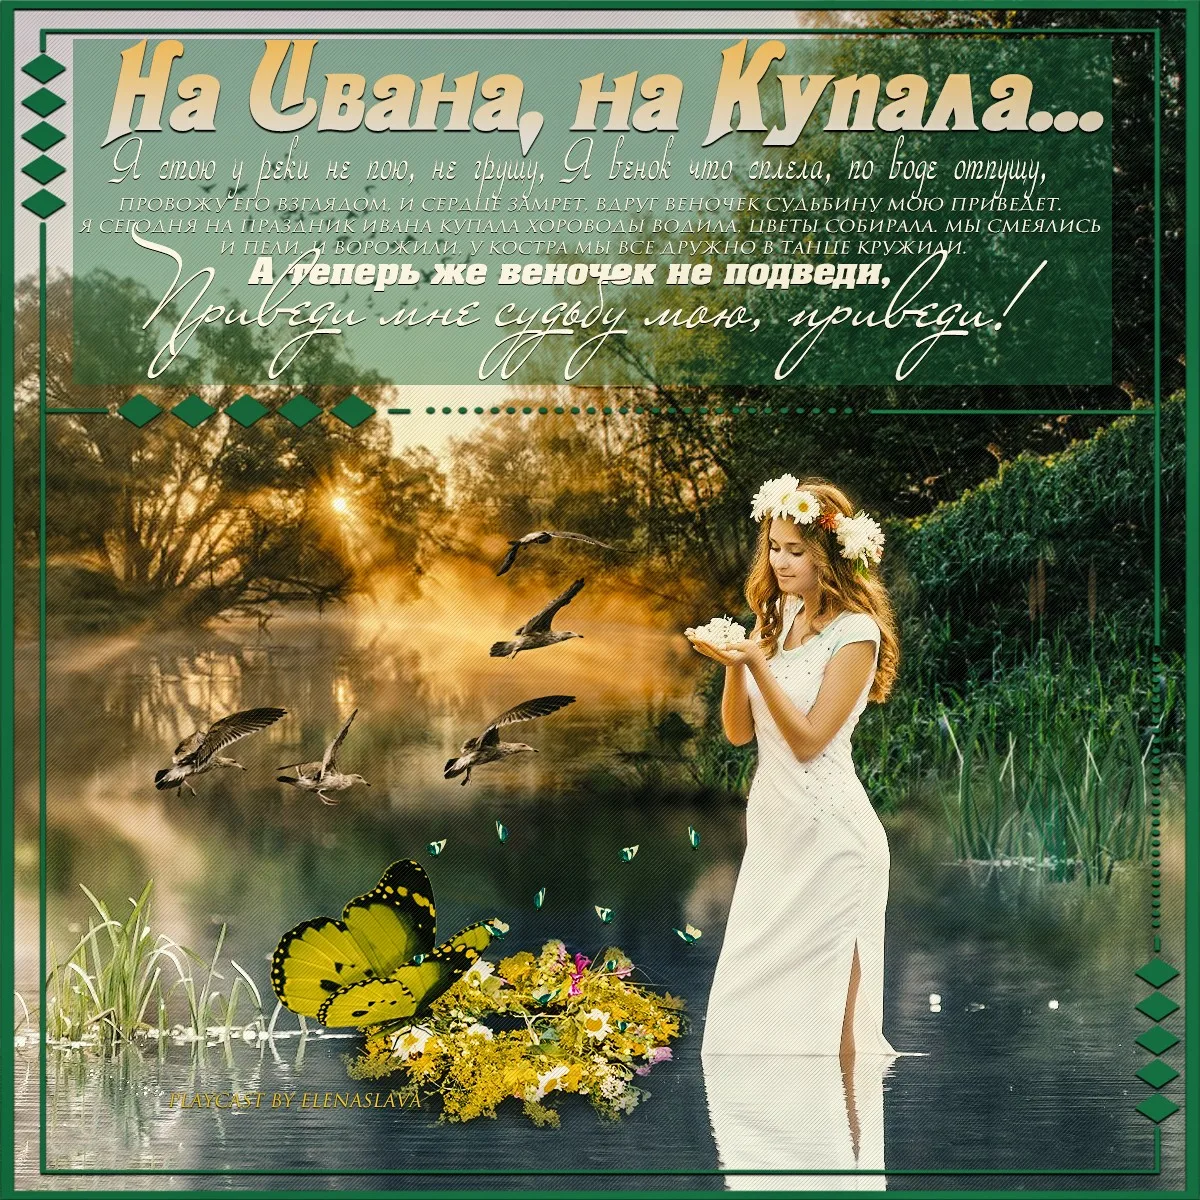 Фото Привітання з Івана купала на українській мові #86